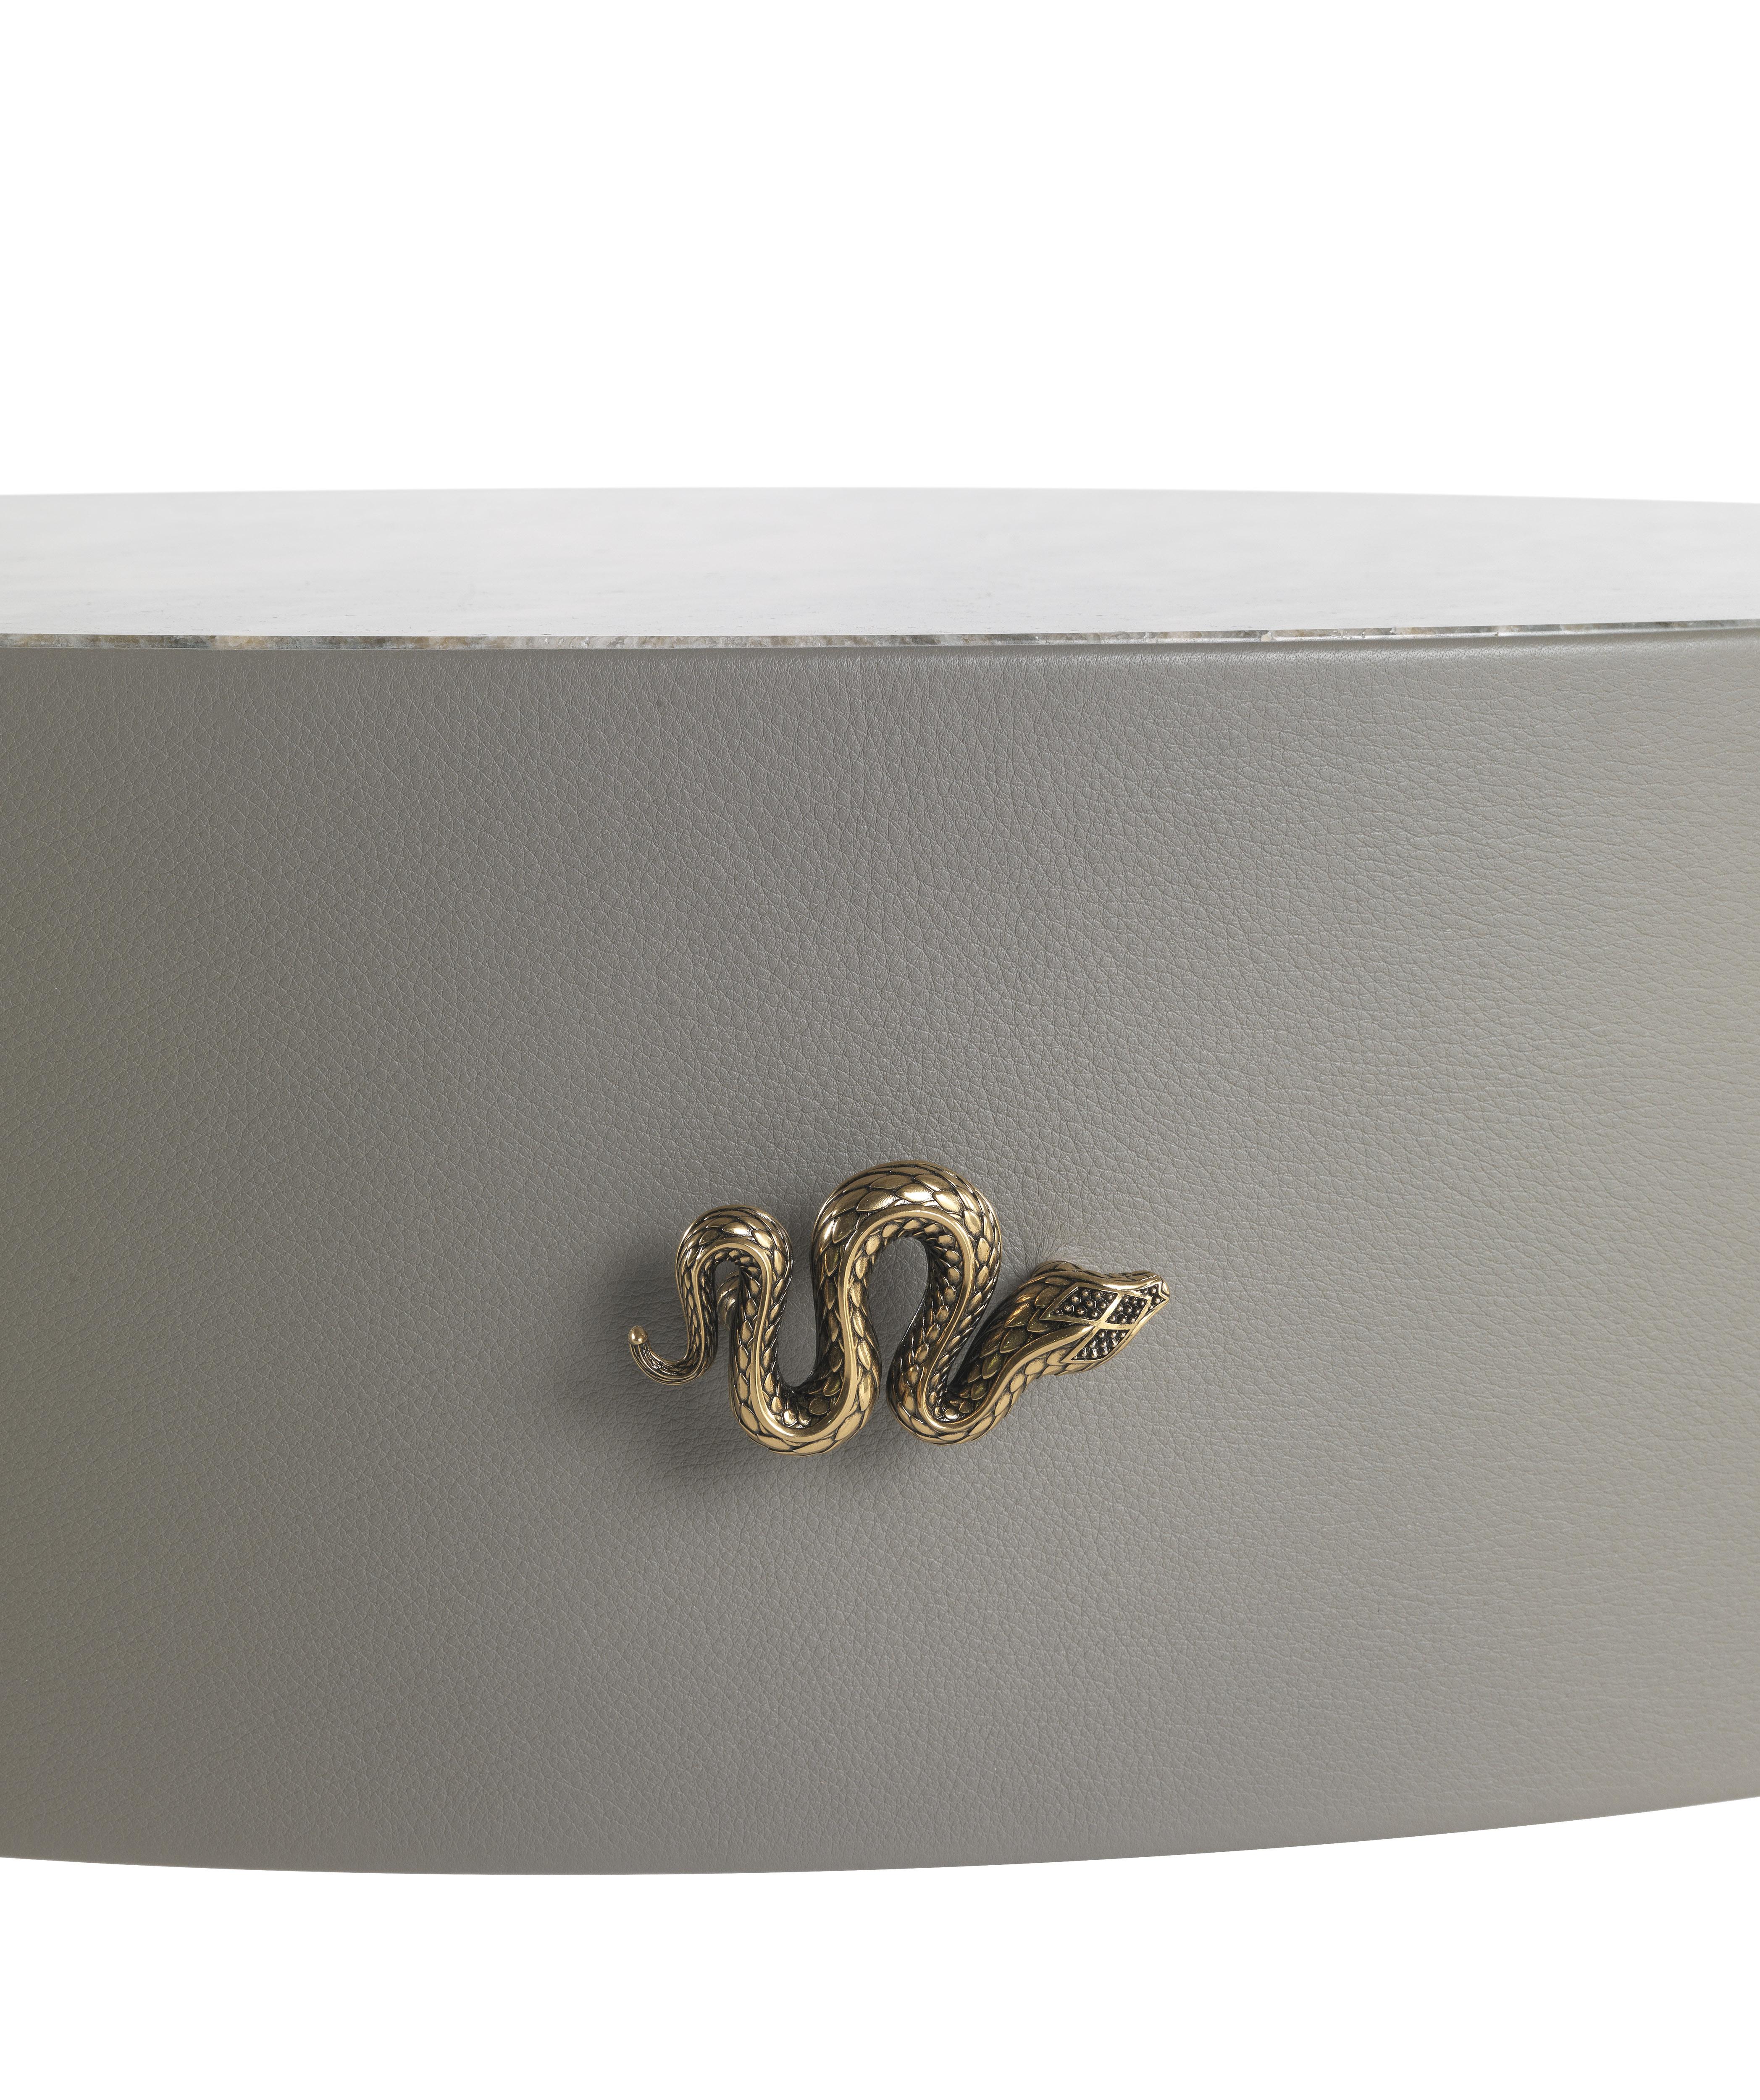 Trinidad Nachttisch mit Struktur aus mehrschichtigem Holz, bezogen mit Leder CAT. B touch COL. Aschgrau, Platte aus Marmor CAT. A Bianco Carrara, Beine in Gold glänzend. 